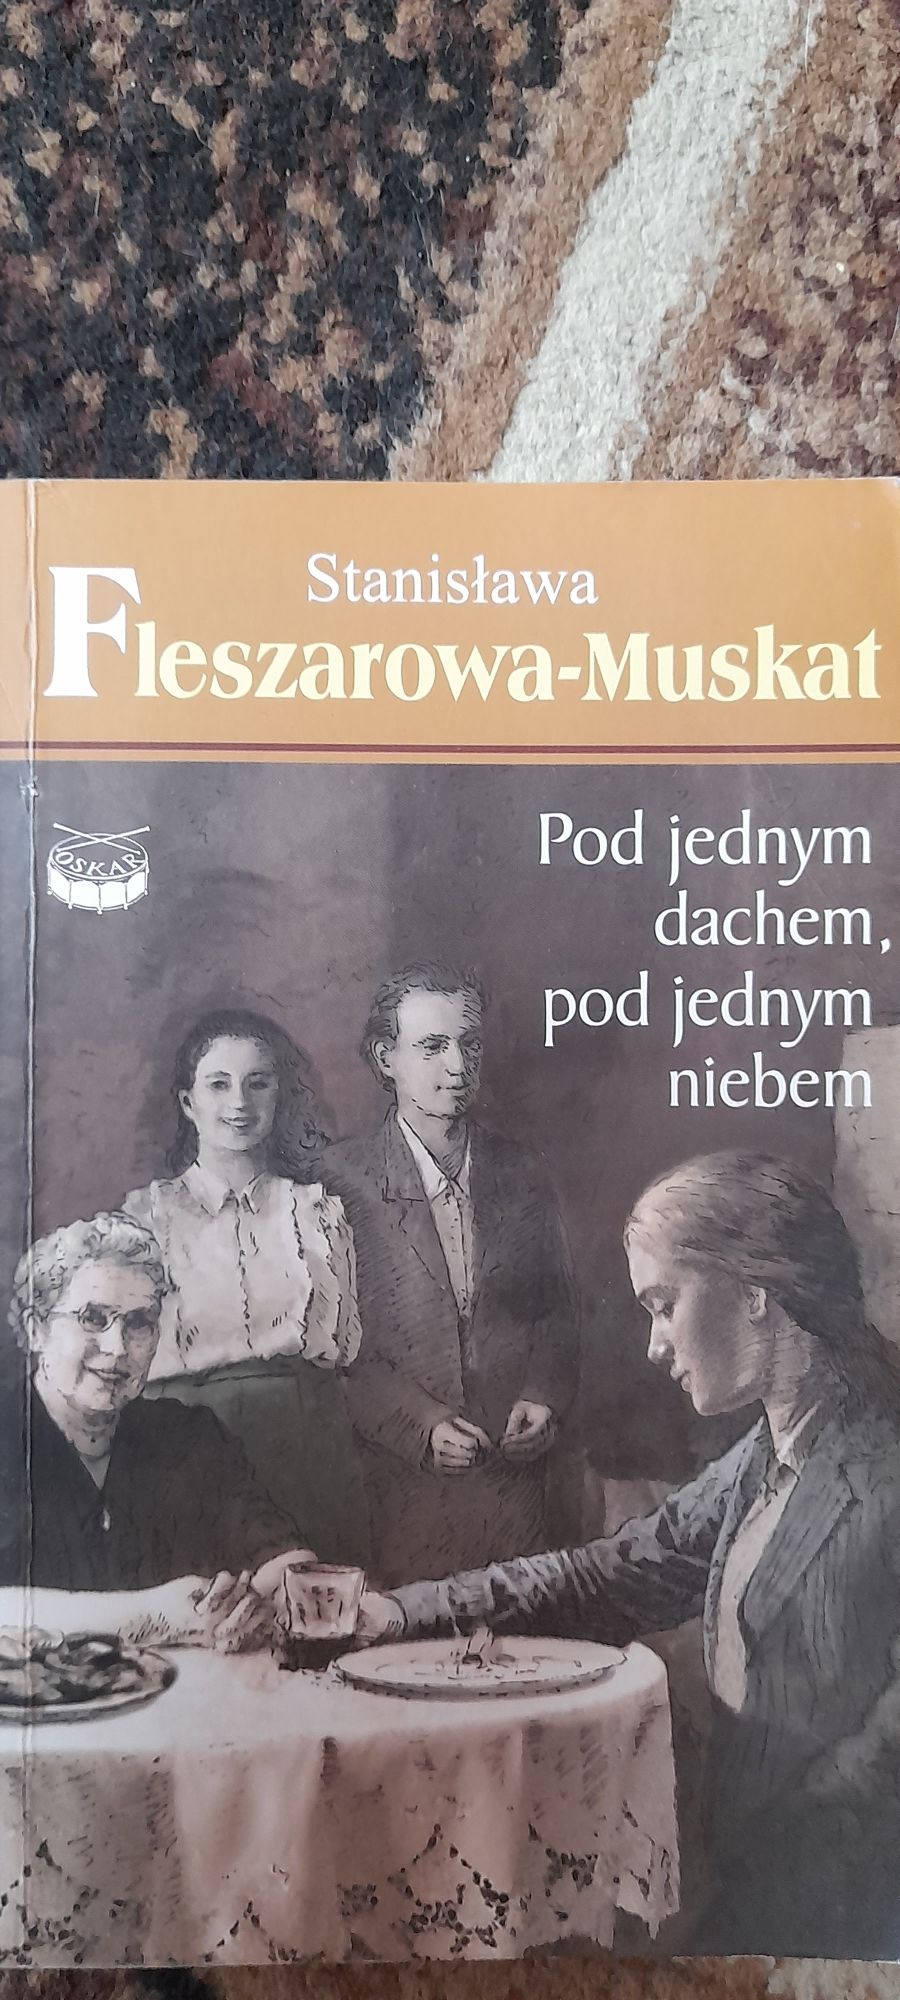 Pod jednym dachem, pod jednym niebem-Stanisława Fleszerowa-Muskat 2011